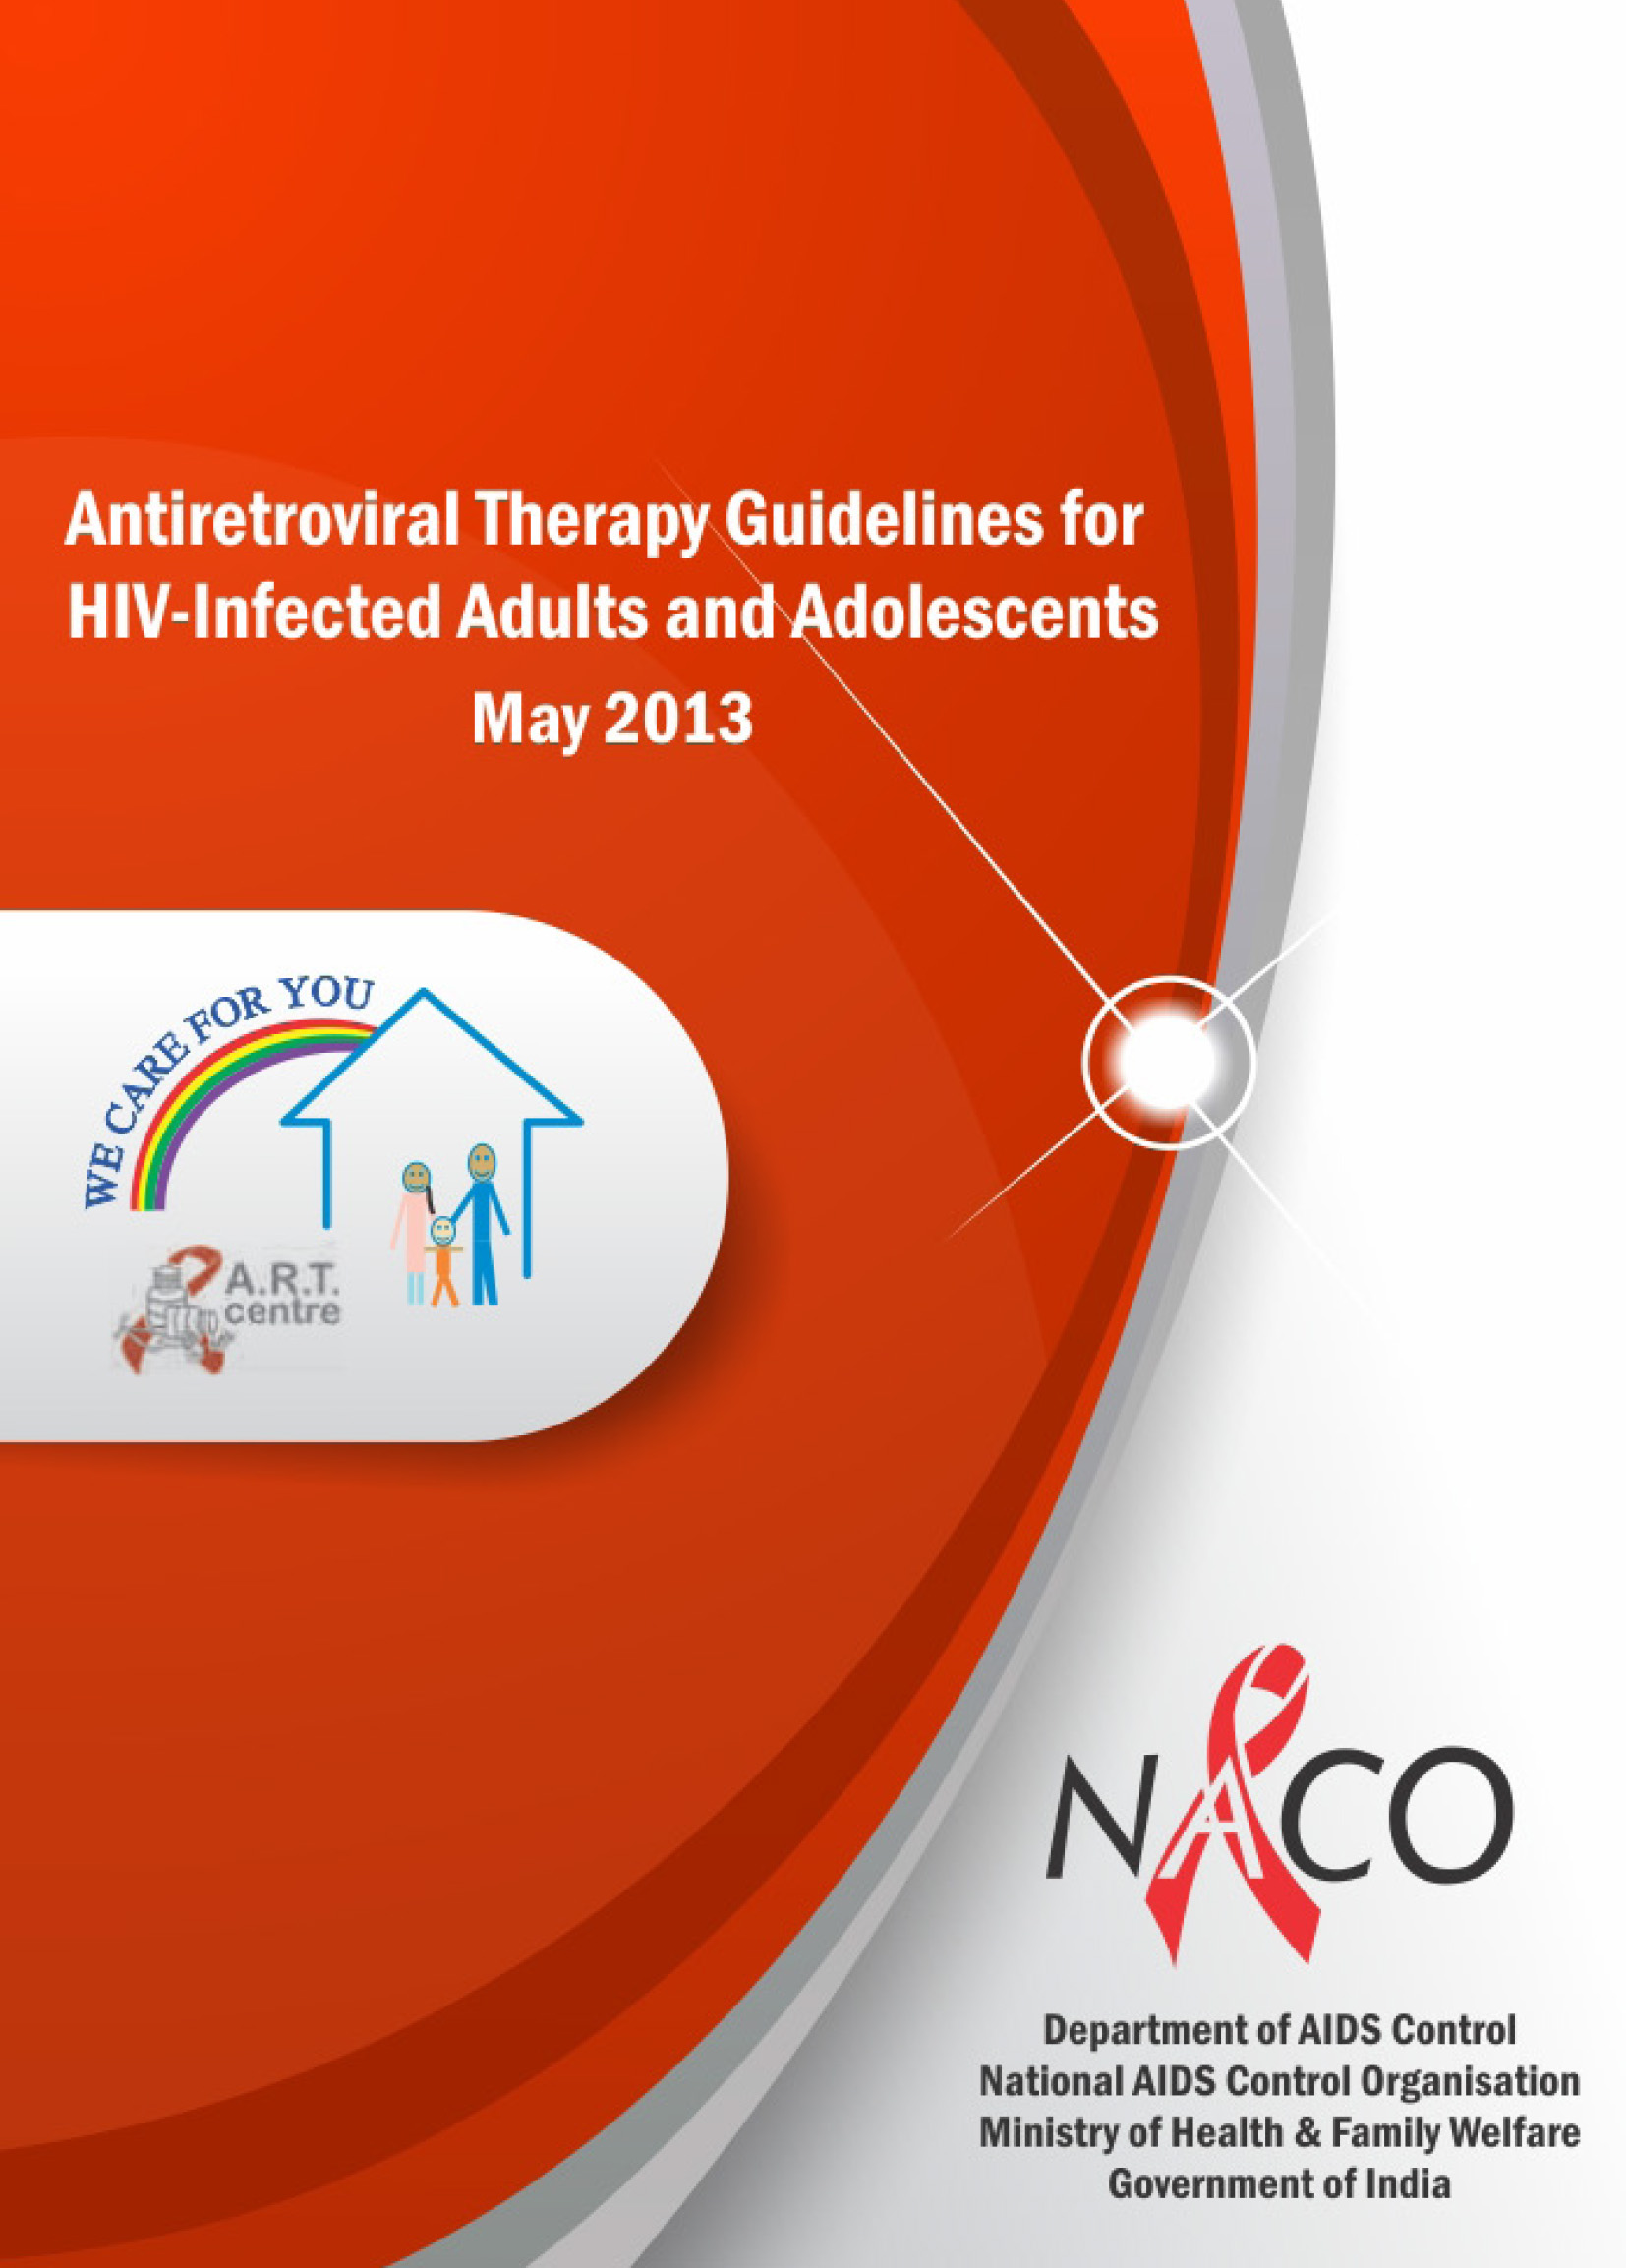 Directrices de terapia antirretroviral para adultos y adolescentes infectados por el VIH 2013